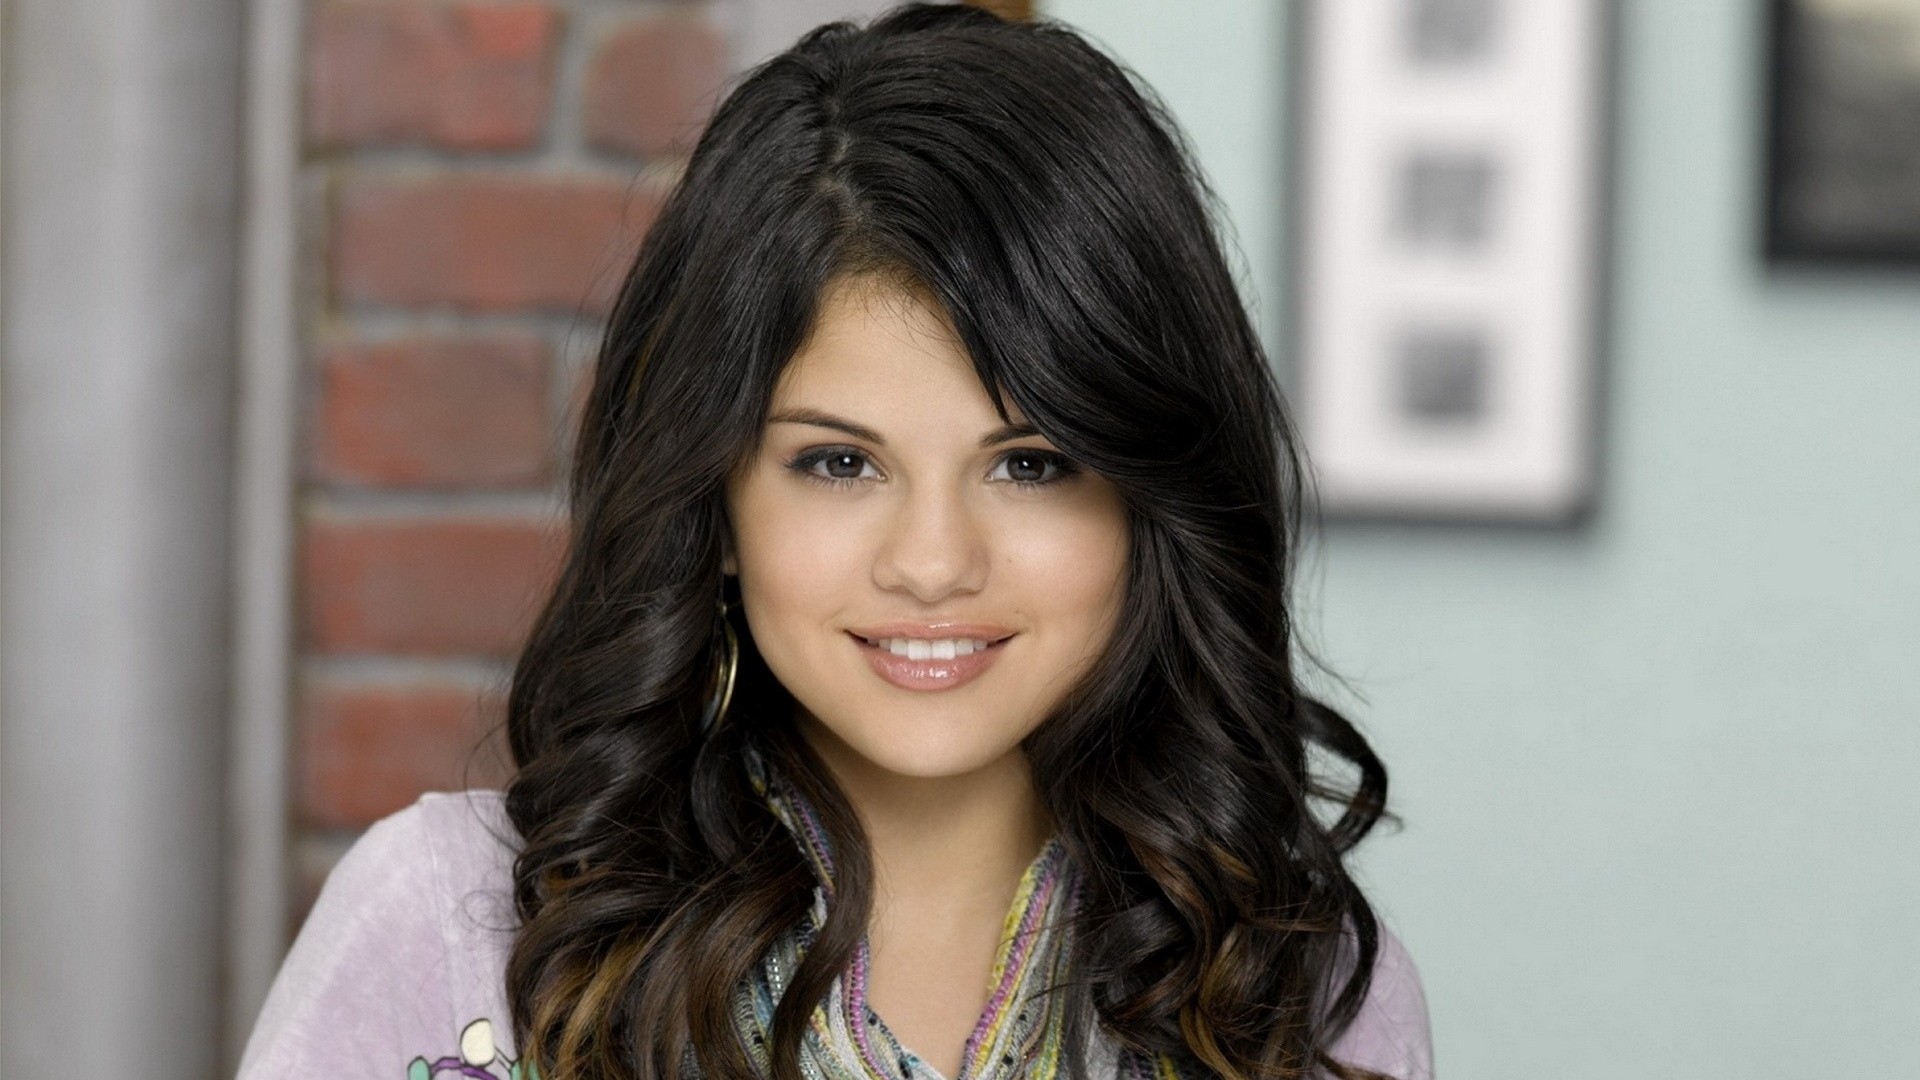 Selena Gomez Wallpaper Picture hd